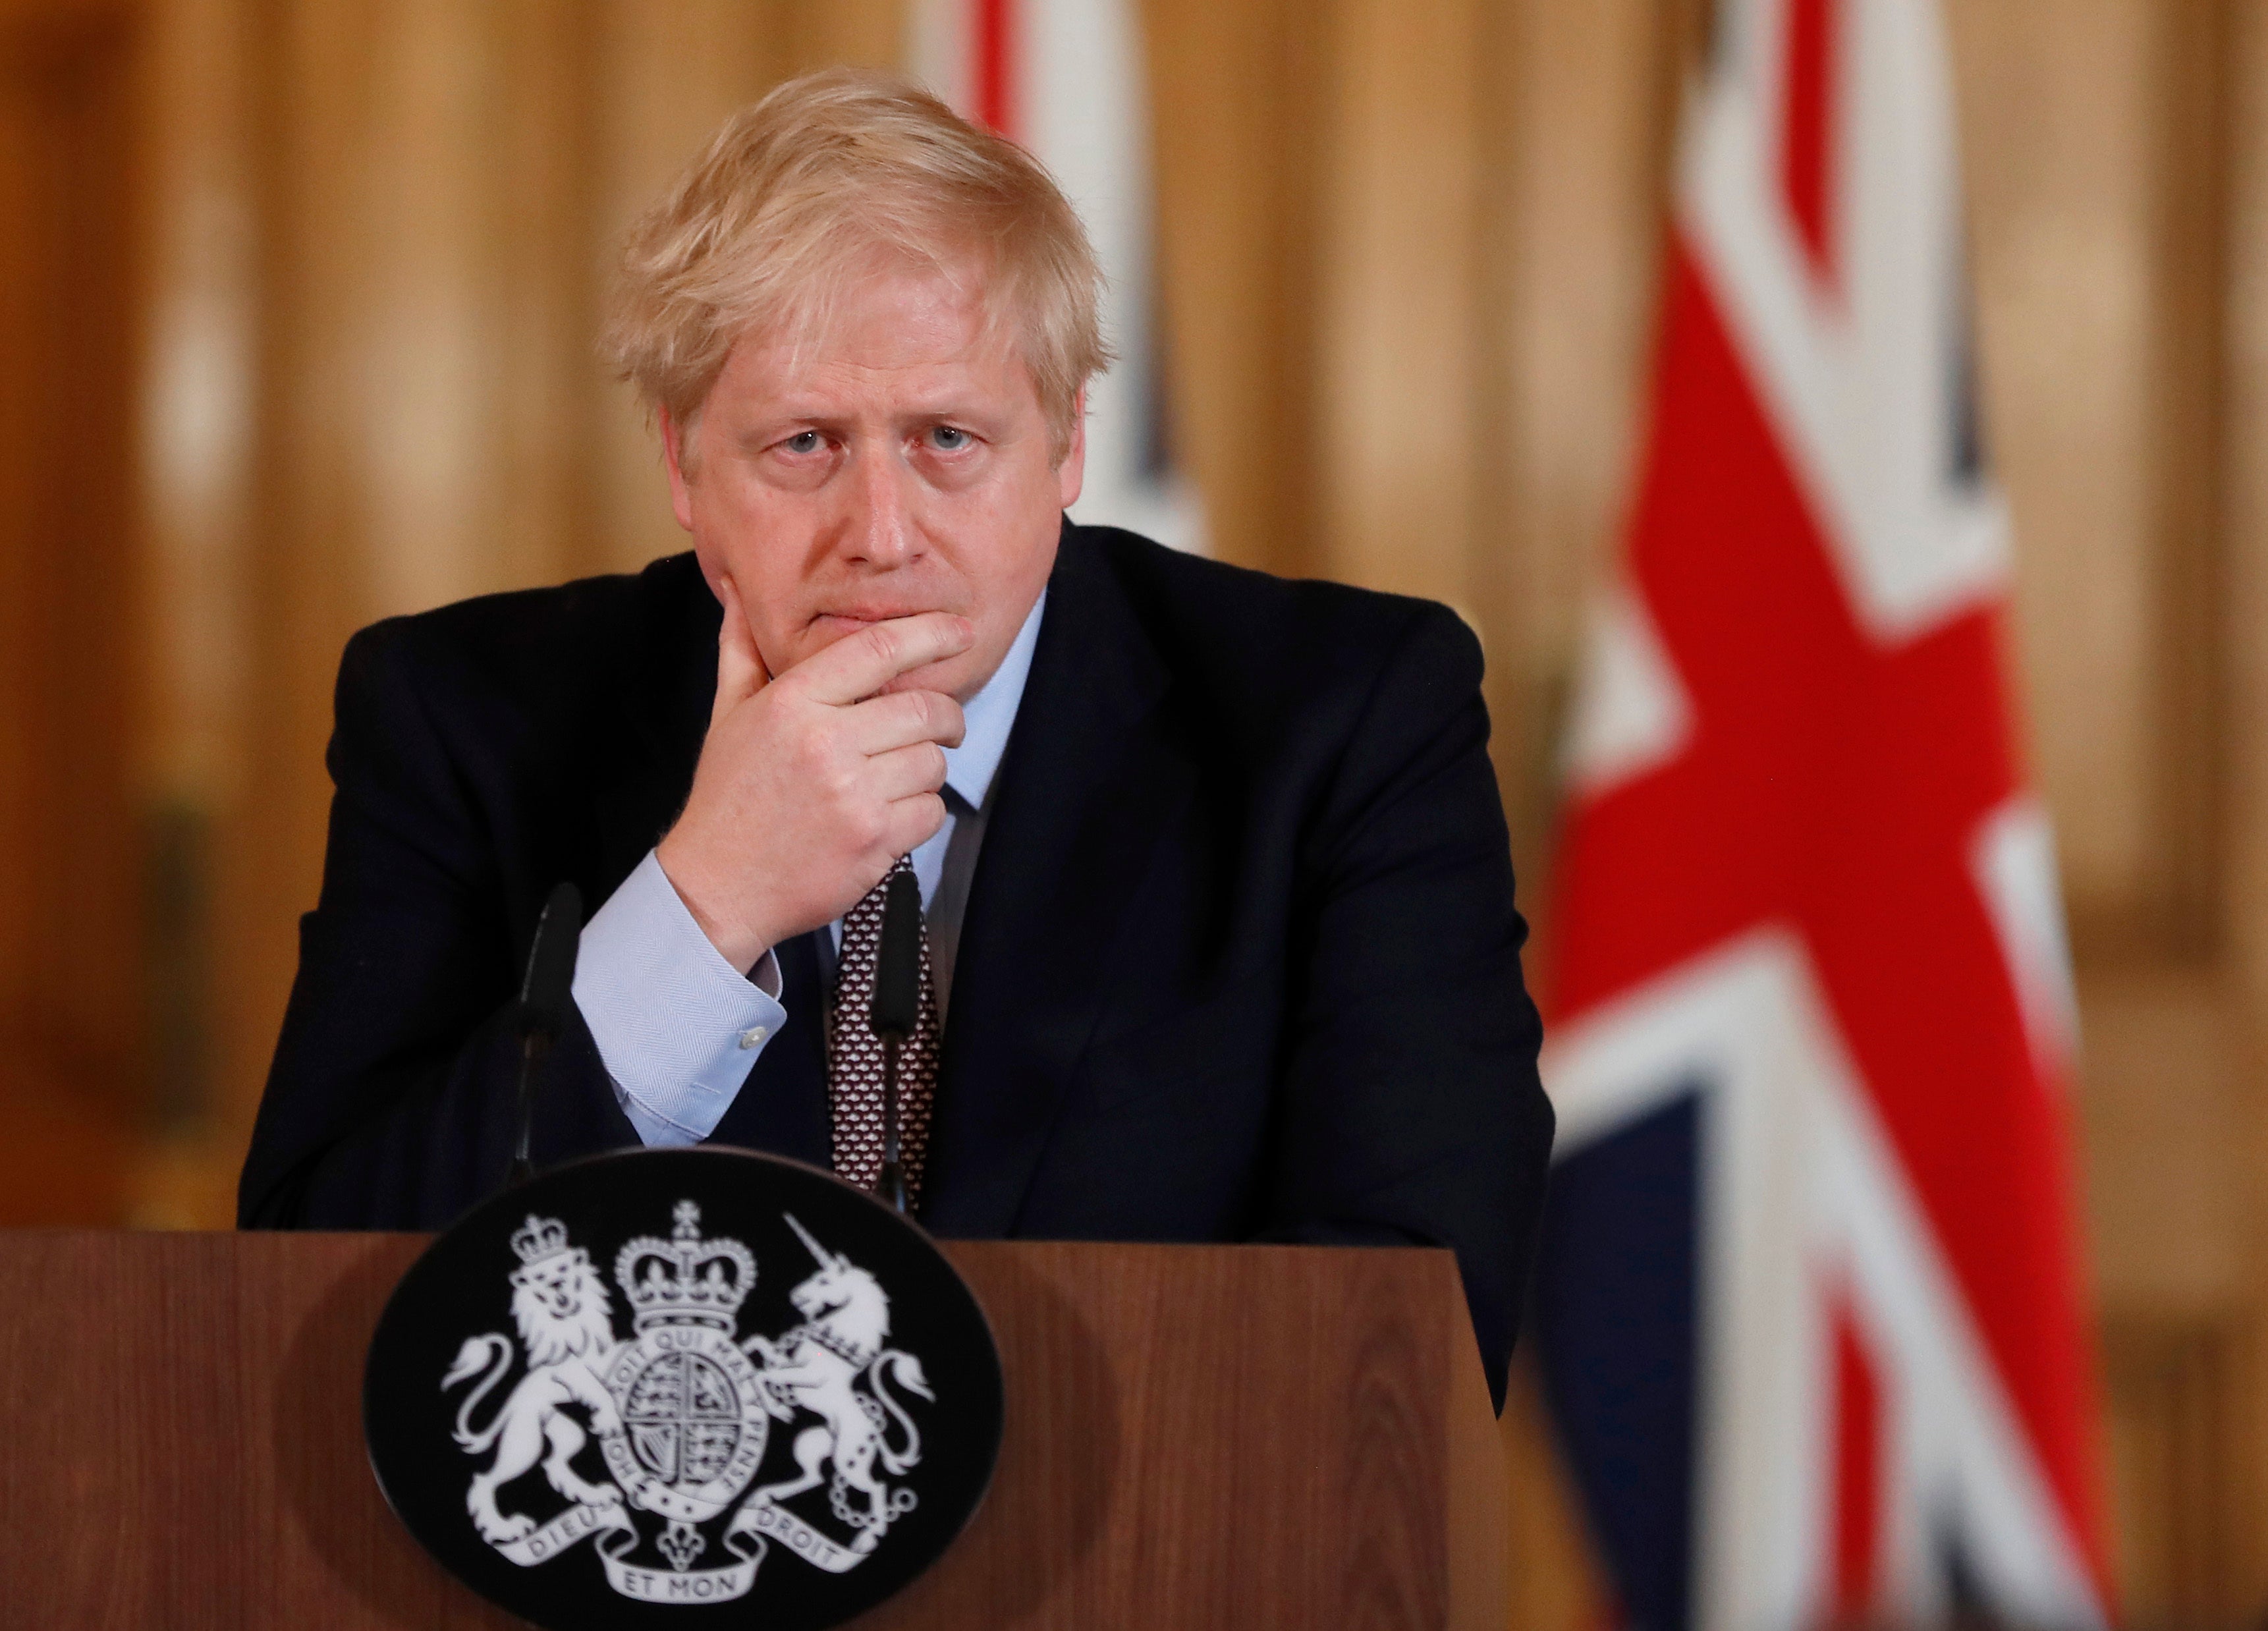 Boris Johnson faces a series of headaches over the summer